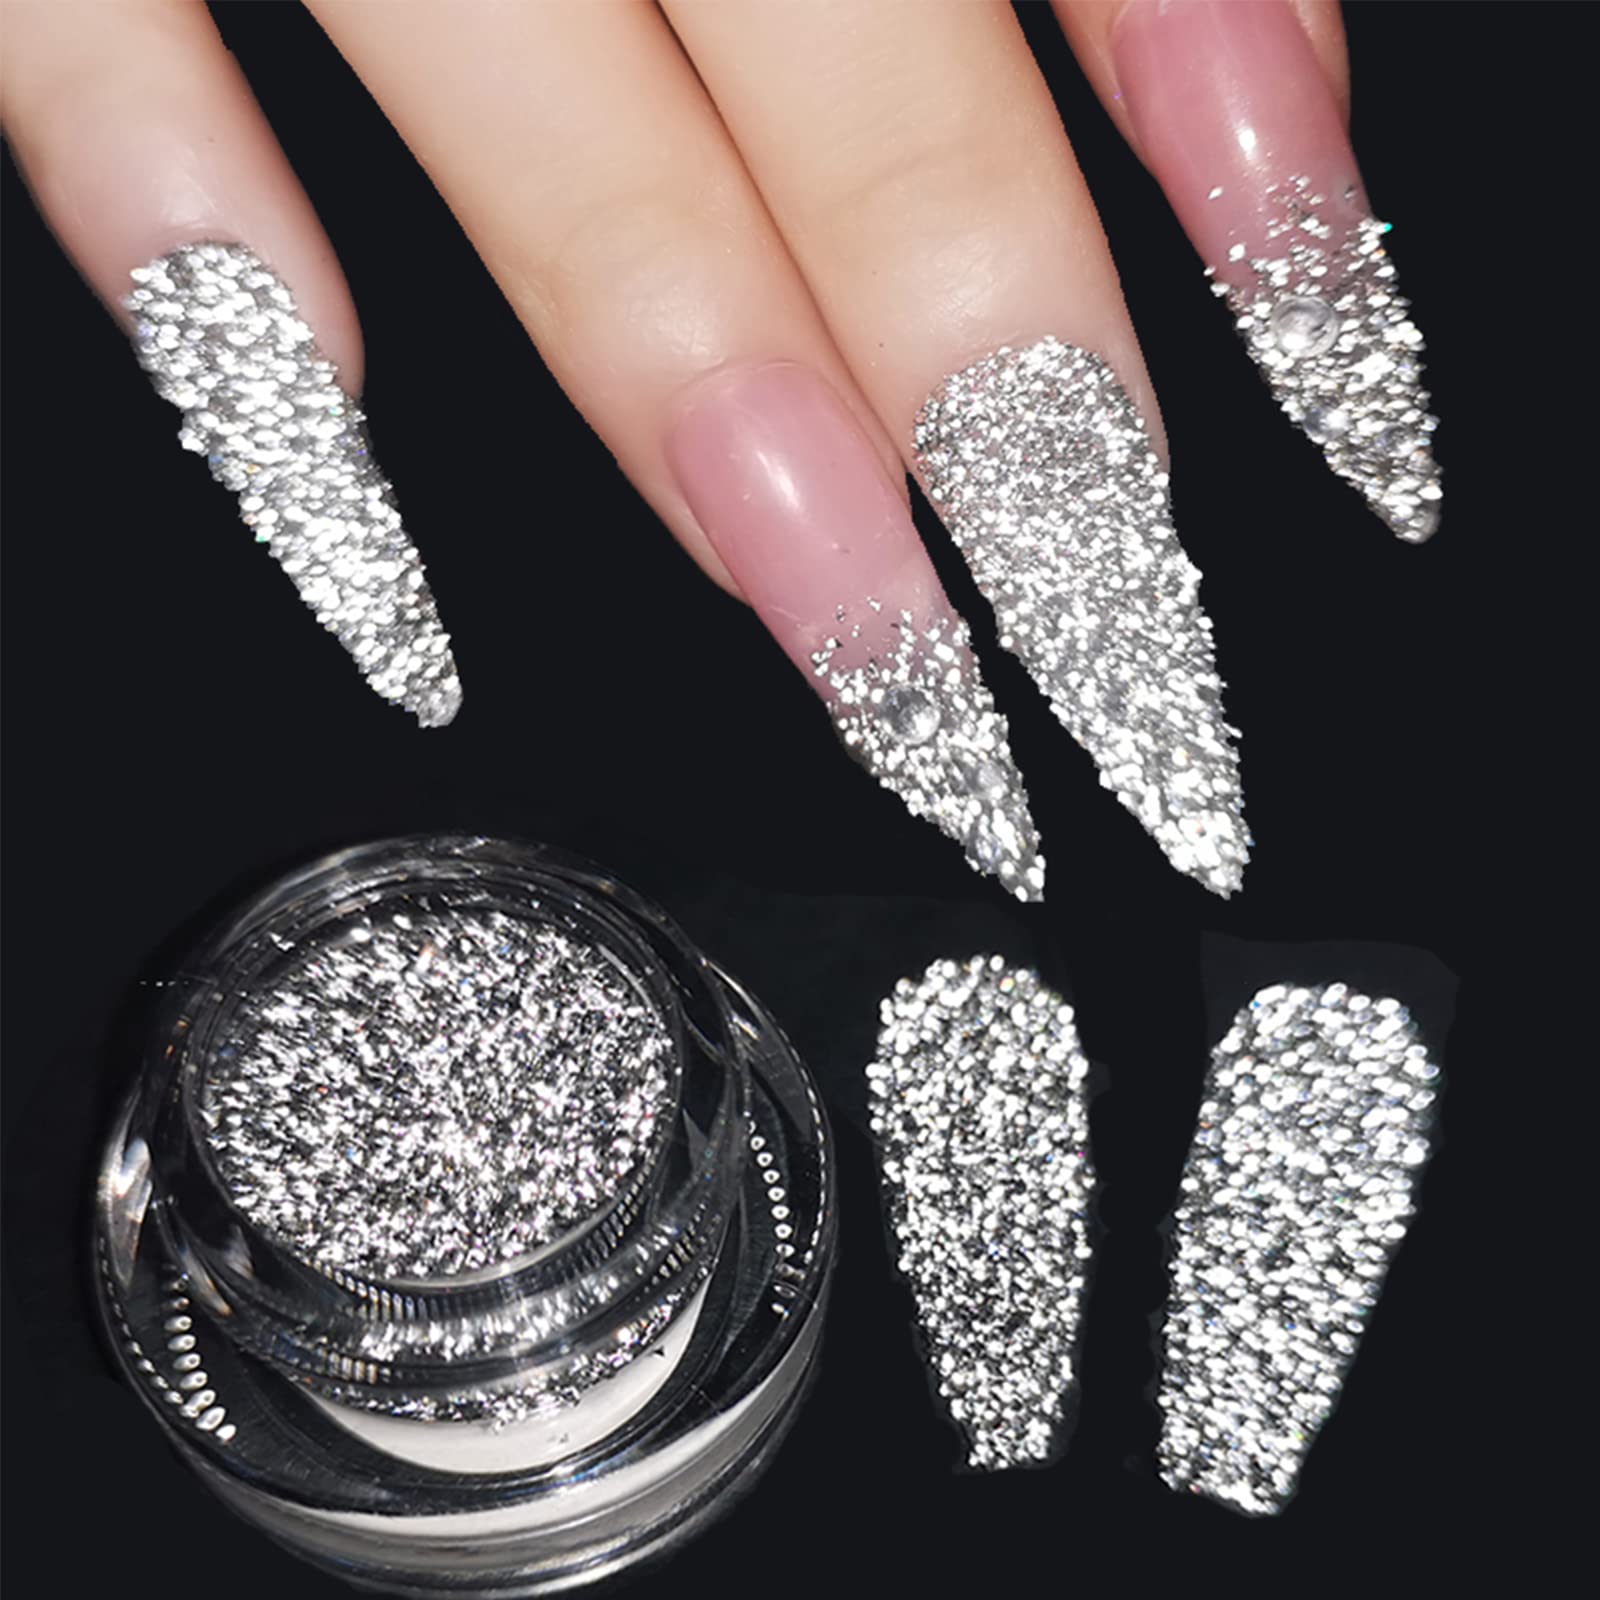 Reflective Glitter Powder Crystal Diamond Nail Powder, 2PCS Sliver Sparkling  Triangle Glitter Holographic Nail Glitter Chrome Dust Gilt Shiny Nail Powder  1# Silver